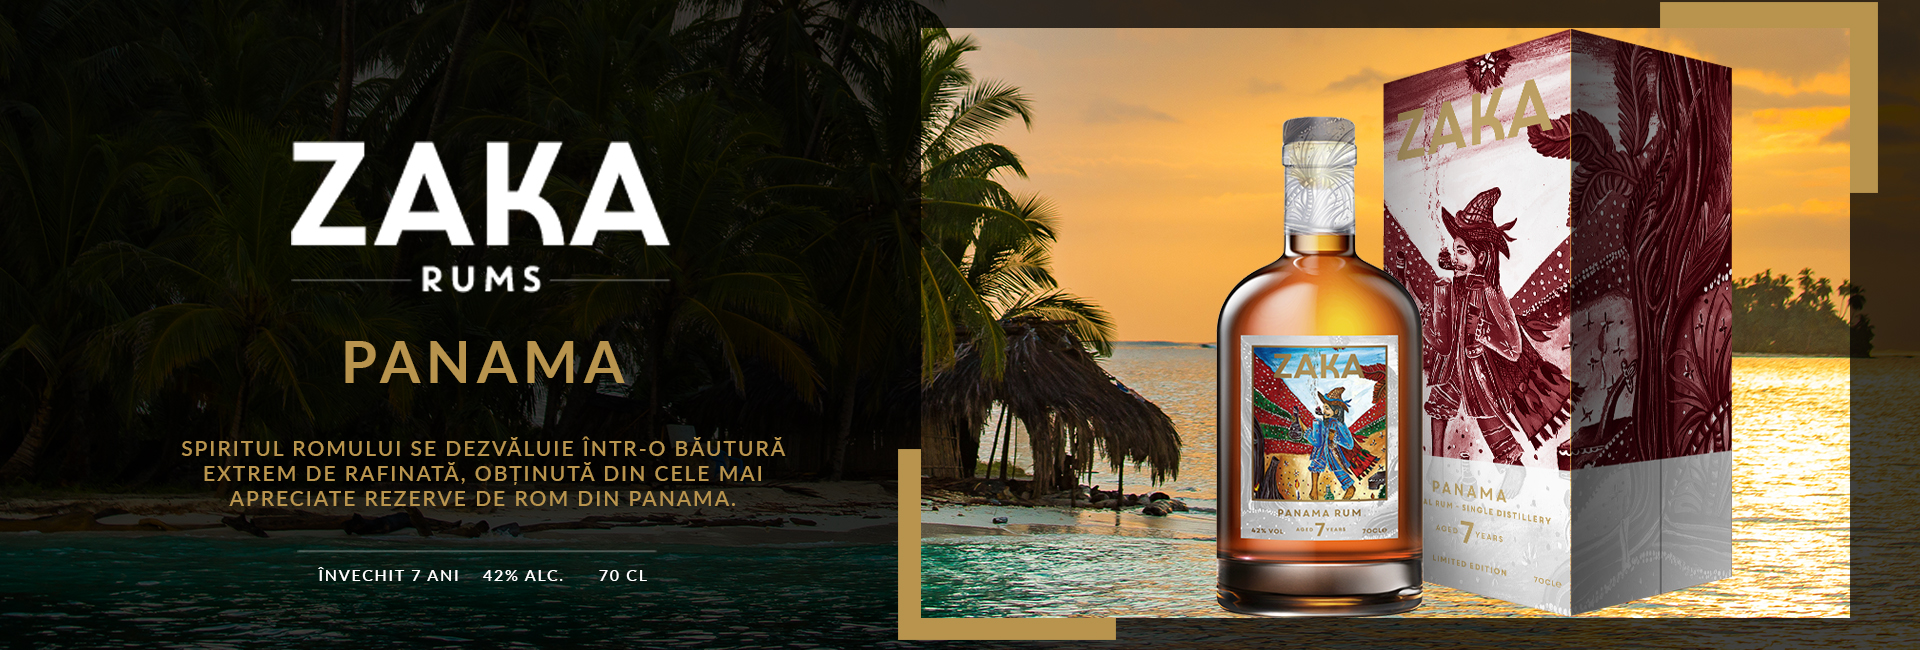 Zaka Rum Panama